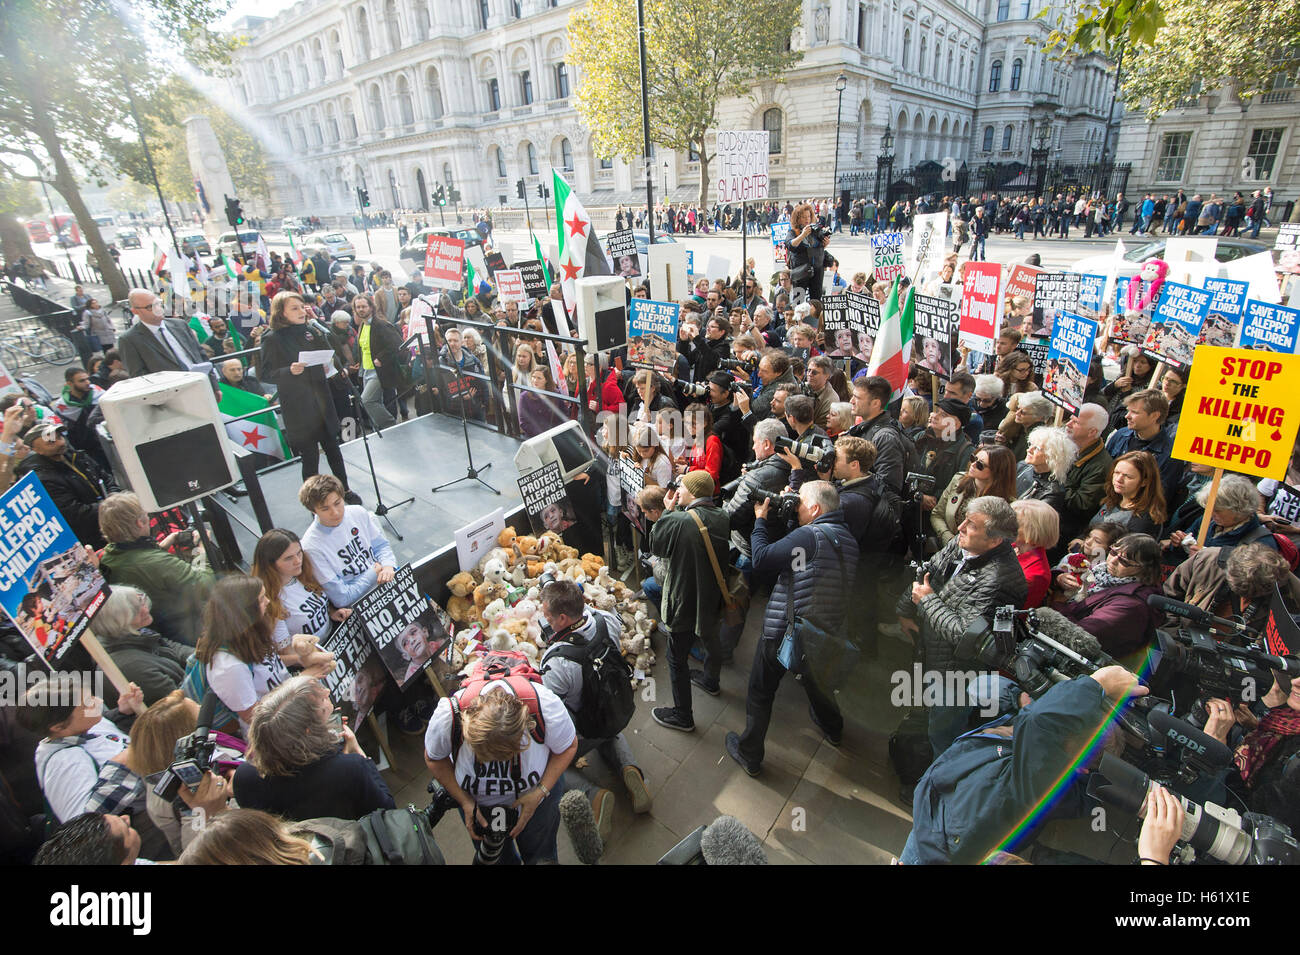 Downing Street/Whitehall actrice Carey Mulligan.lors d'un rassemblement dans la région de Whitehall qui demandent au gouvernement de sauver les enfants d'Alep Banque D'Images